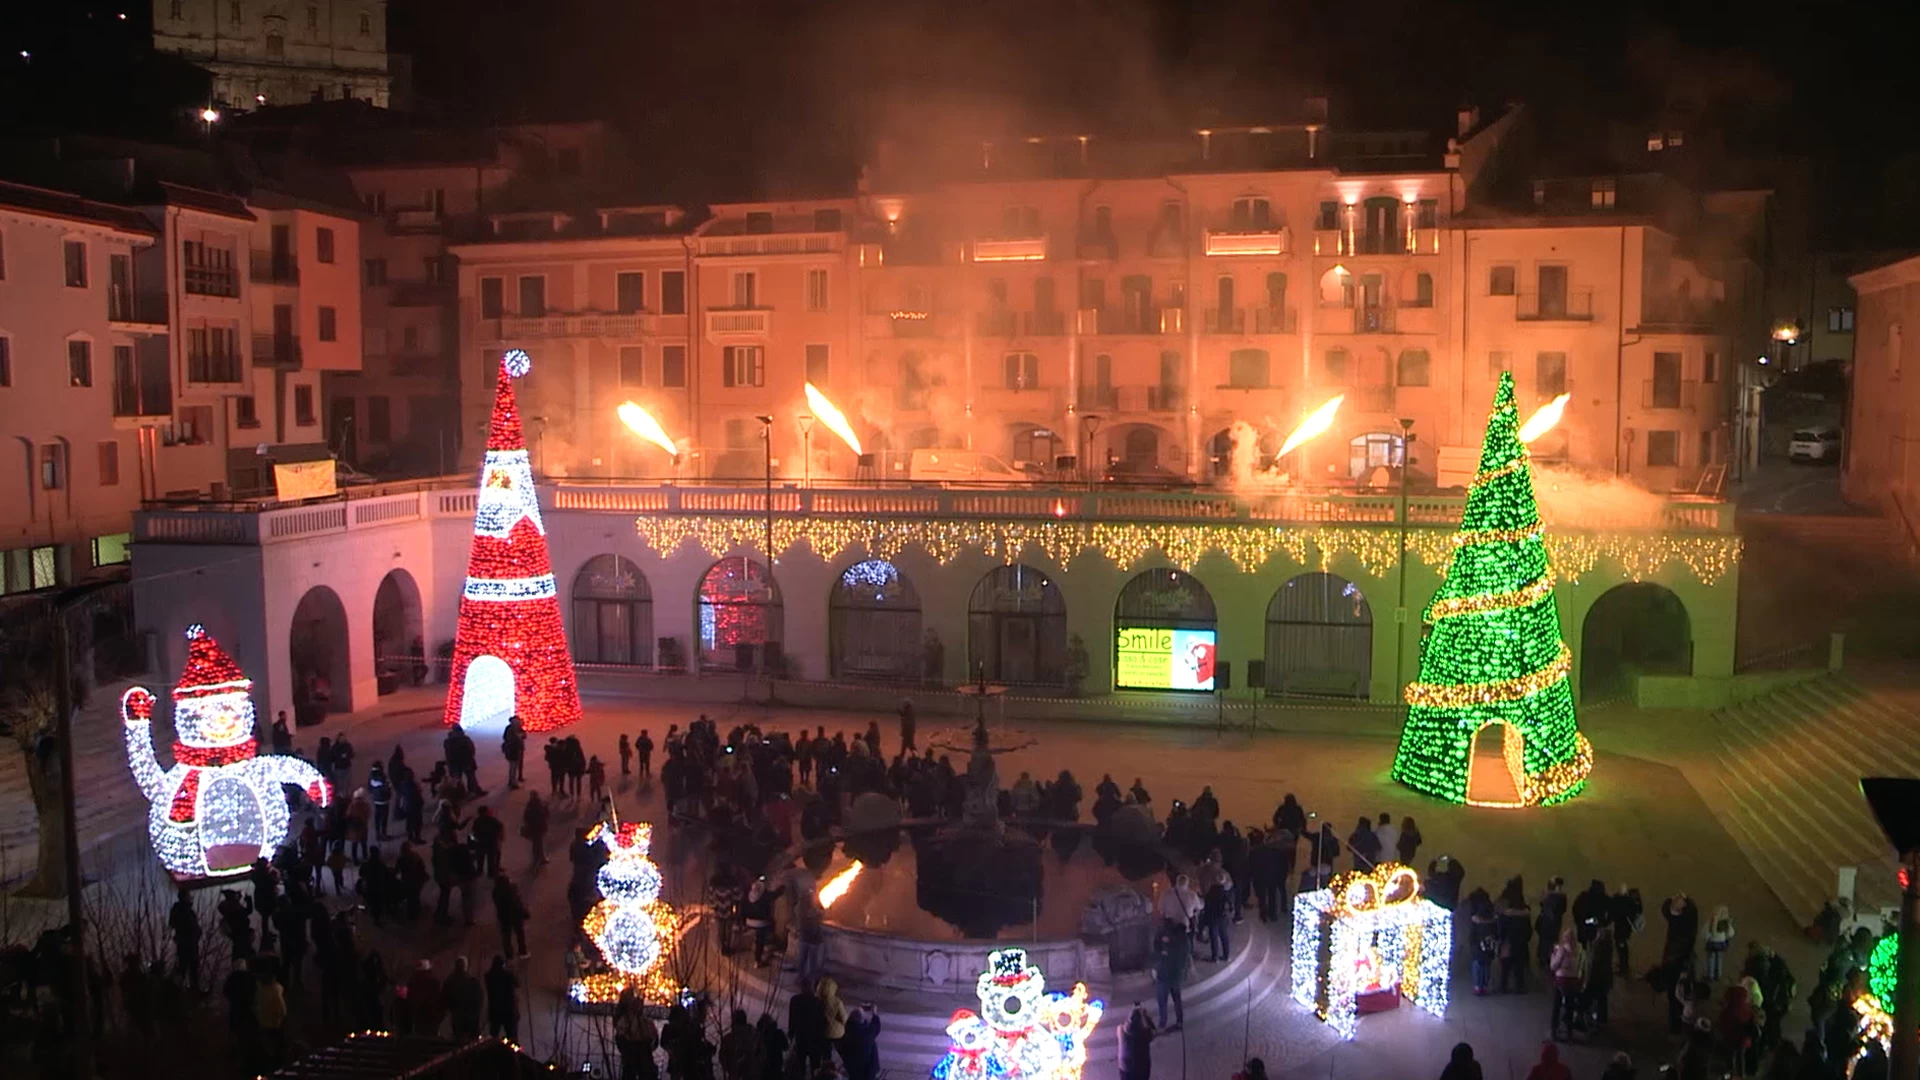 Castel Di Sangro: torna il Capodanno in Piazza Plebiscito. Il sindaco Caruso: “Grande evento, tipico delle località più blasonate del turismo invernale”.